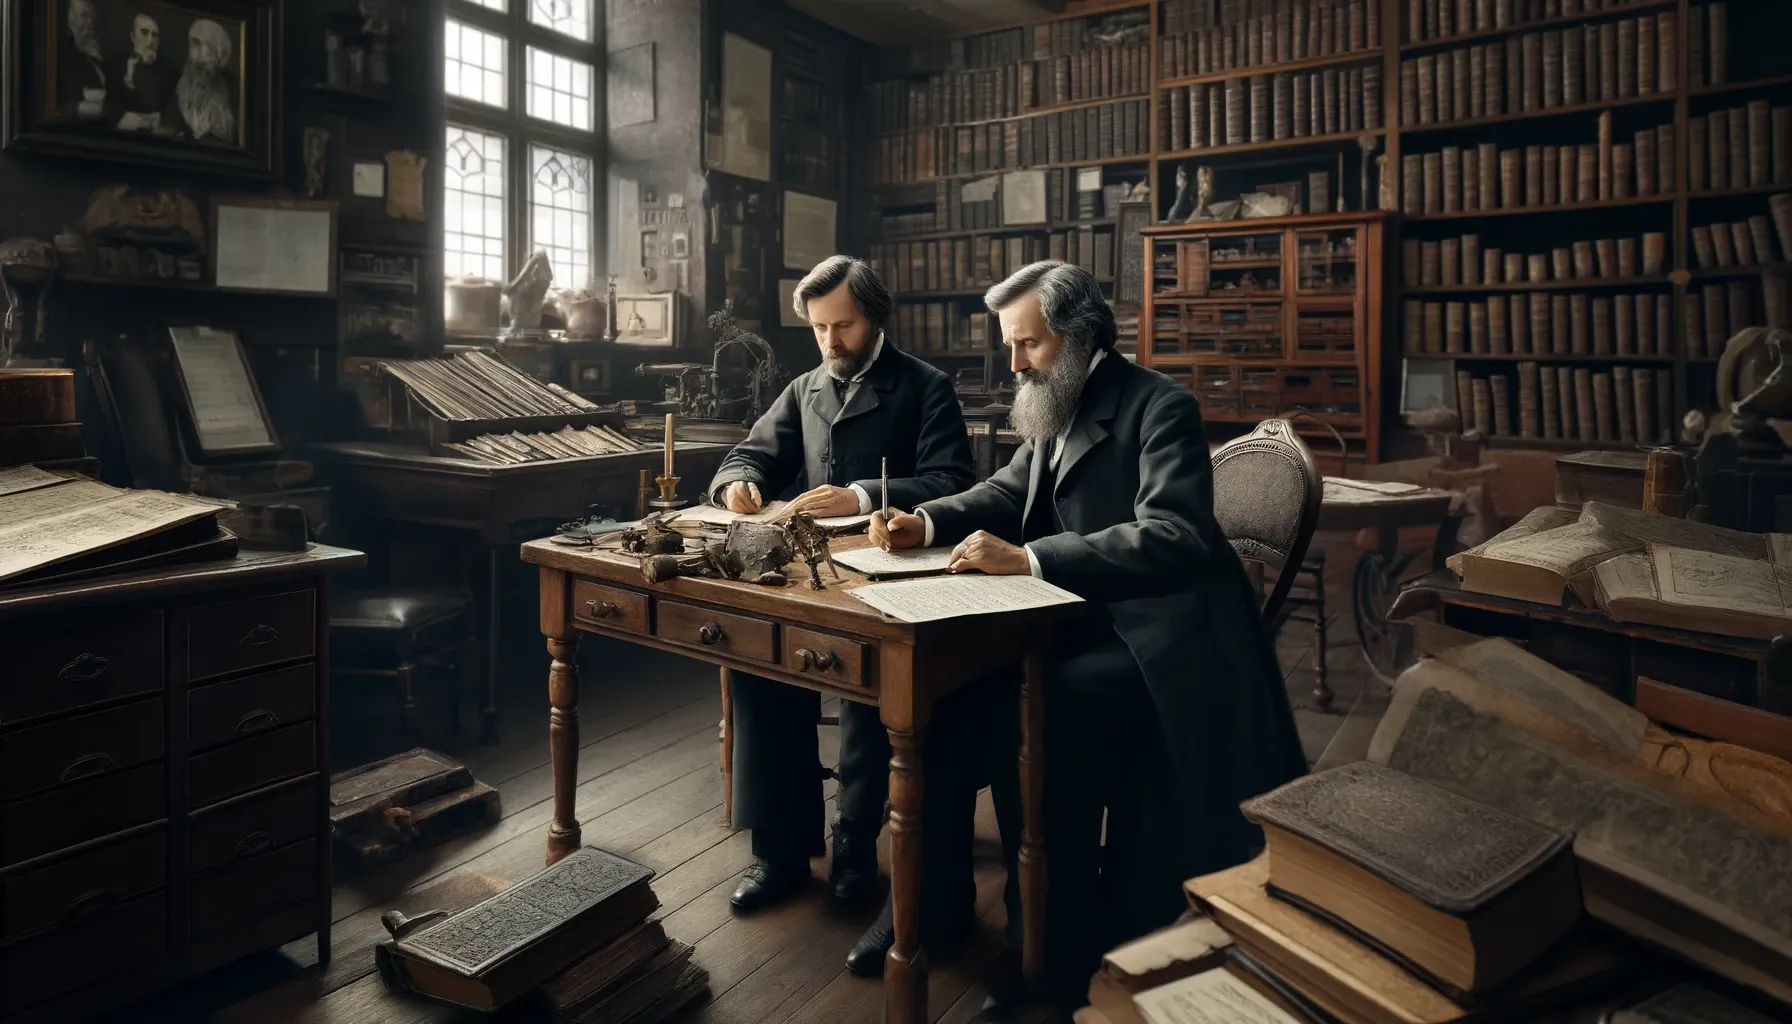 Los Hermanos Grimm en una habitación antigua, trabajando juntos en una mesa con libros y manuscritos.